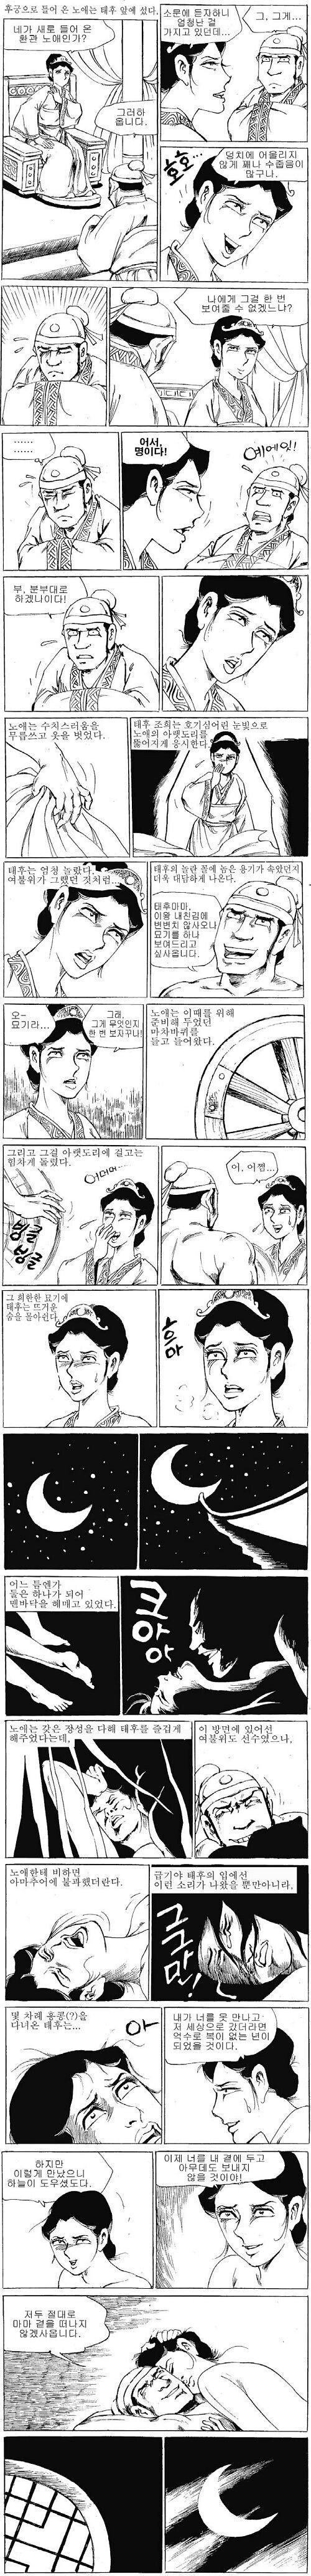 ㅇㅎ?)전국시대 대물남.manhwa